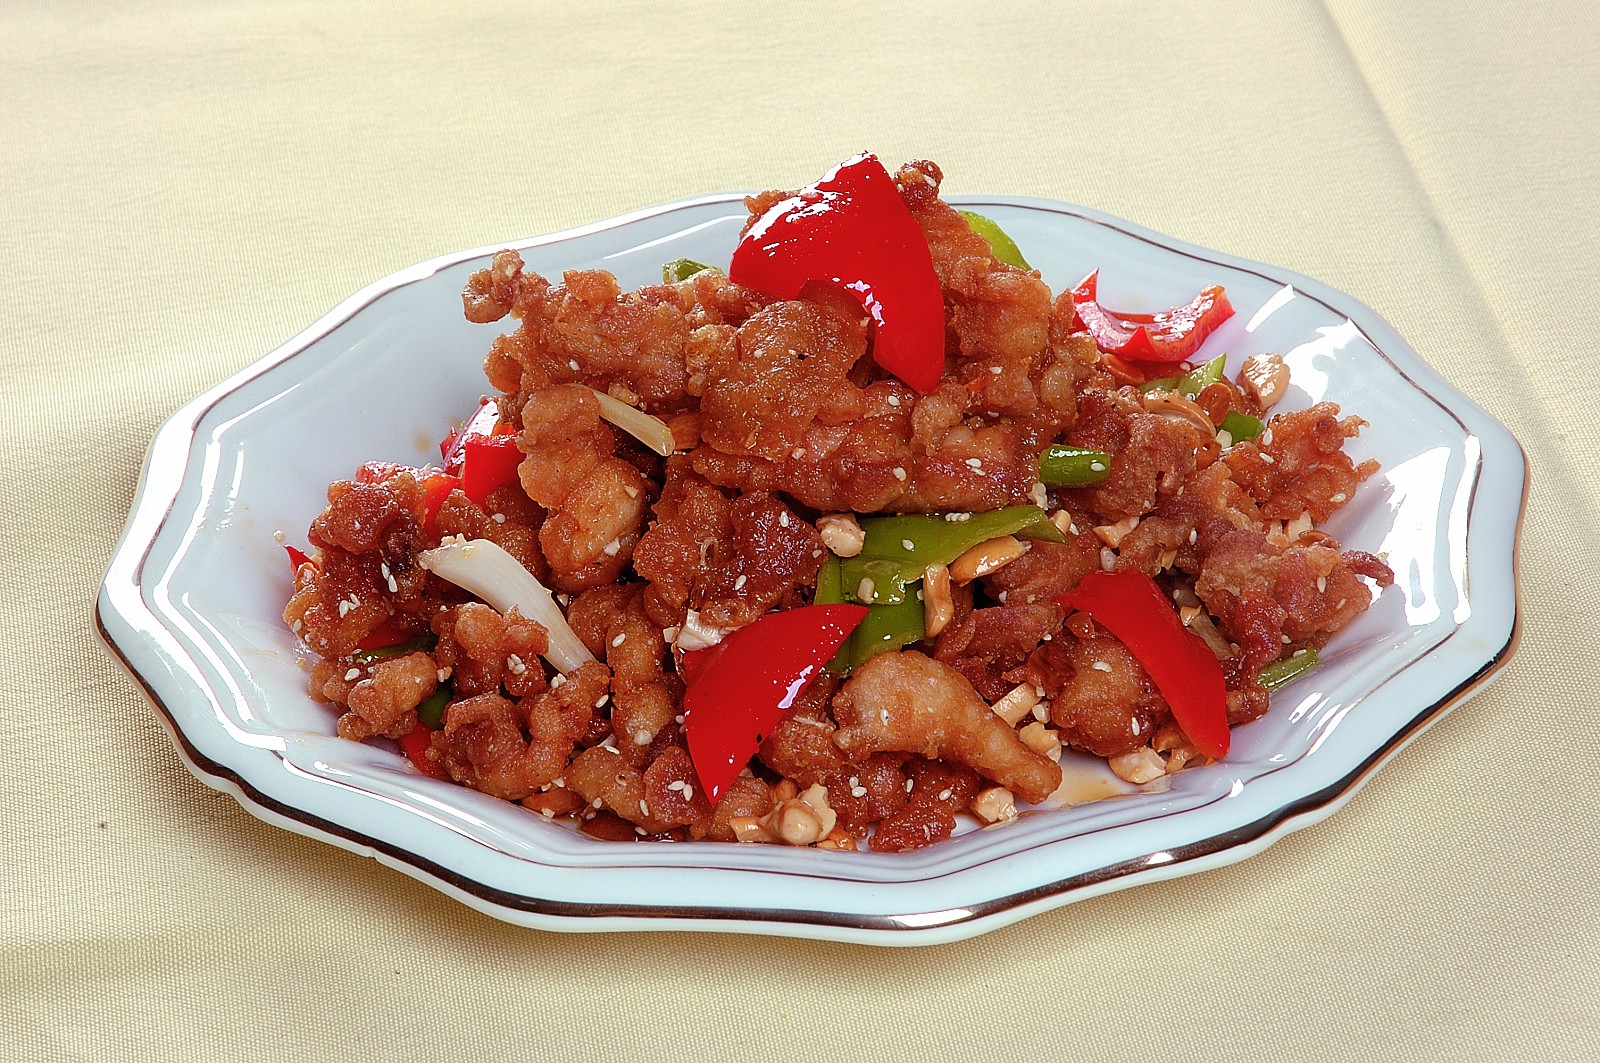 每日推荐六道可口的炒菜:红汤金针菇